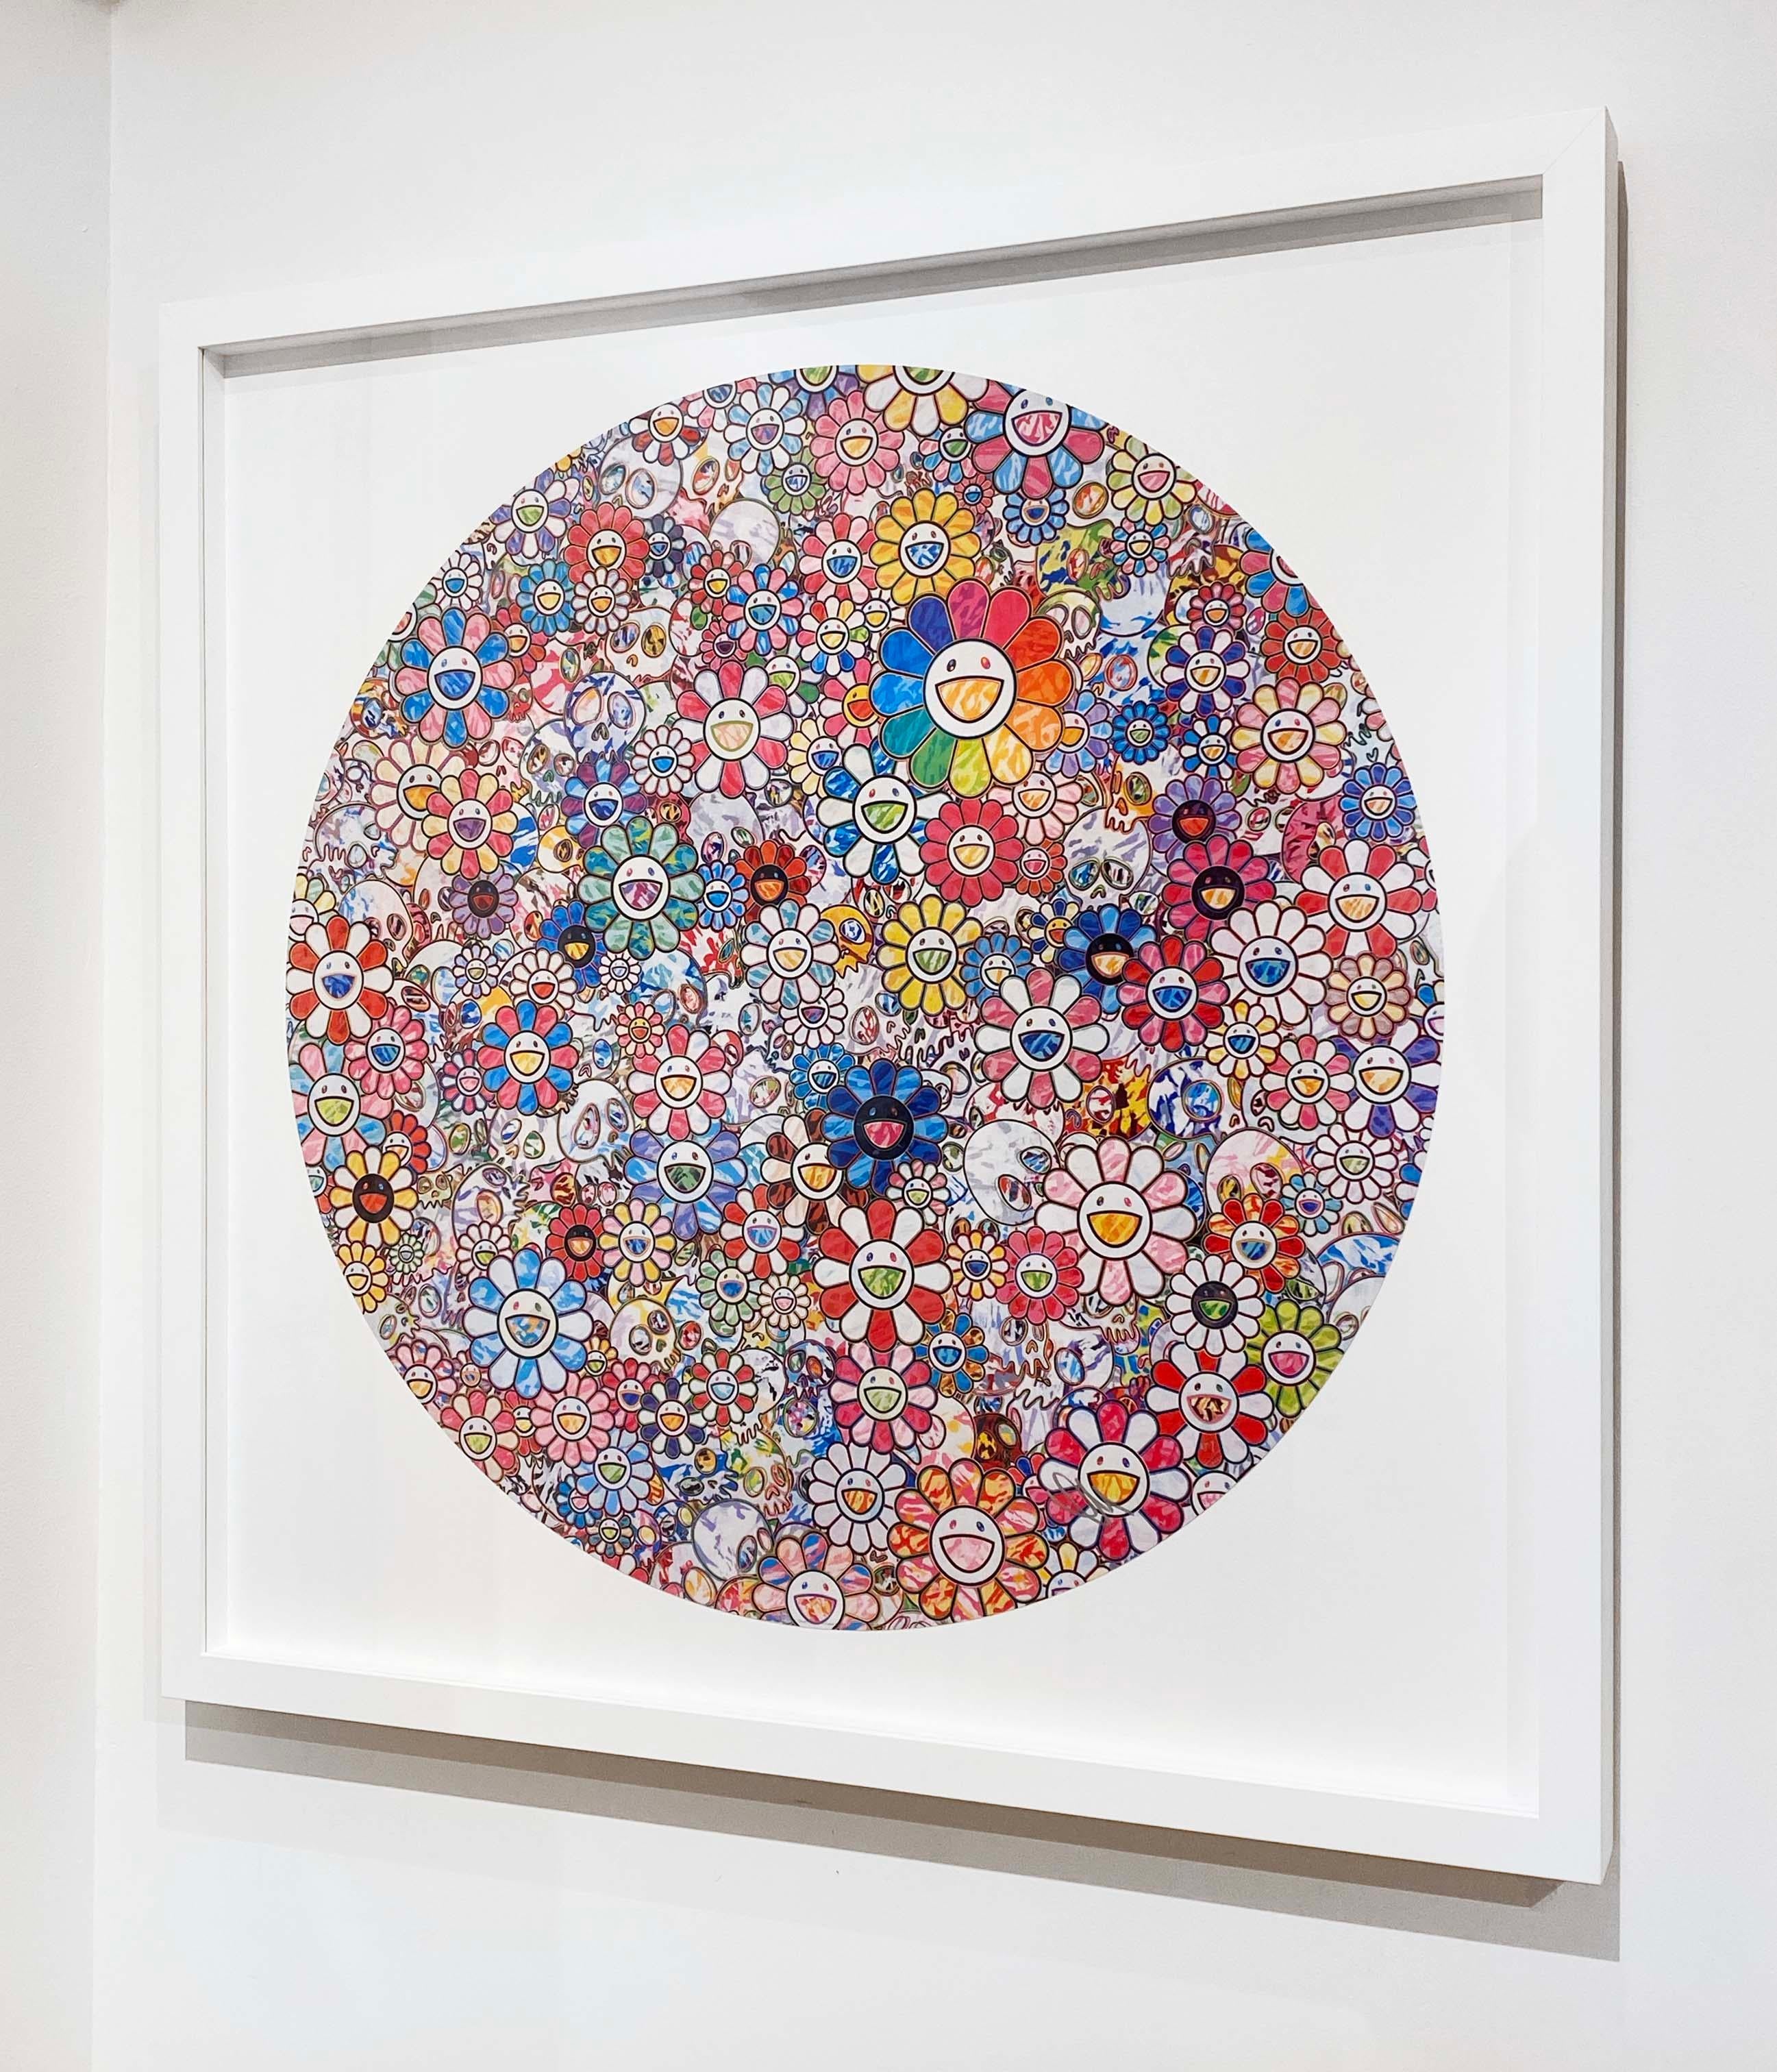 Künstler:  Murakami, Takashi
Titel:  Paradies in einem Blumenfeld
Datum:  2023
Medium:  Offsetlithographie in Farben auf glattem Velinpapier
Ungerahmt Abmessungen:  28